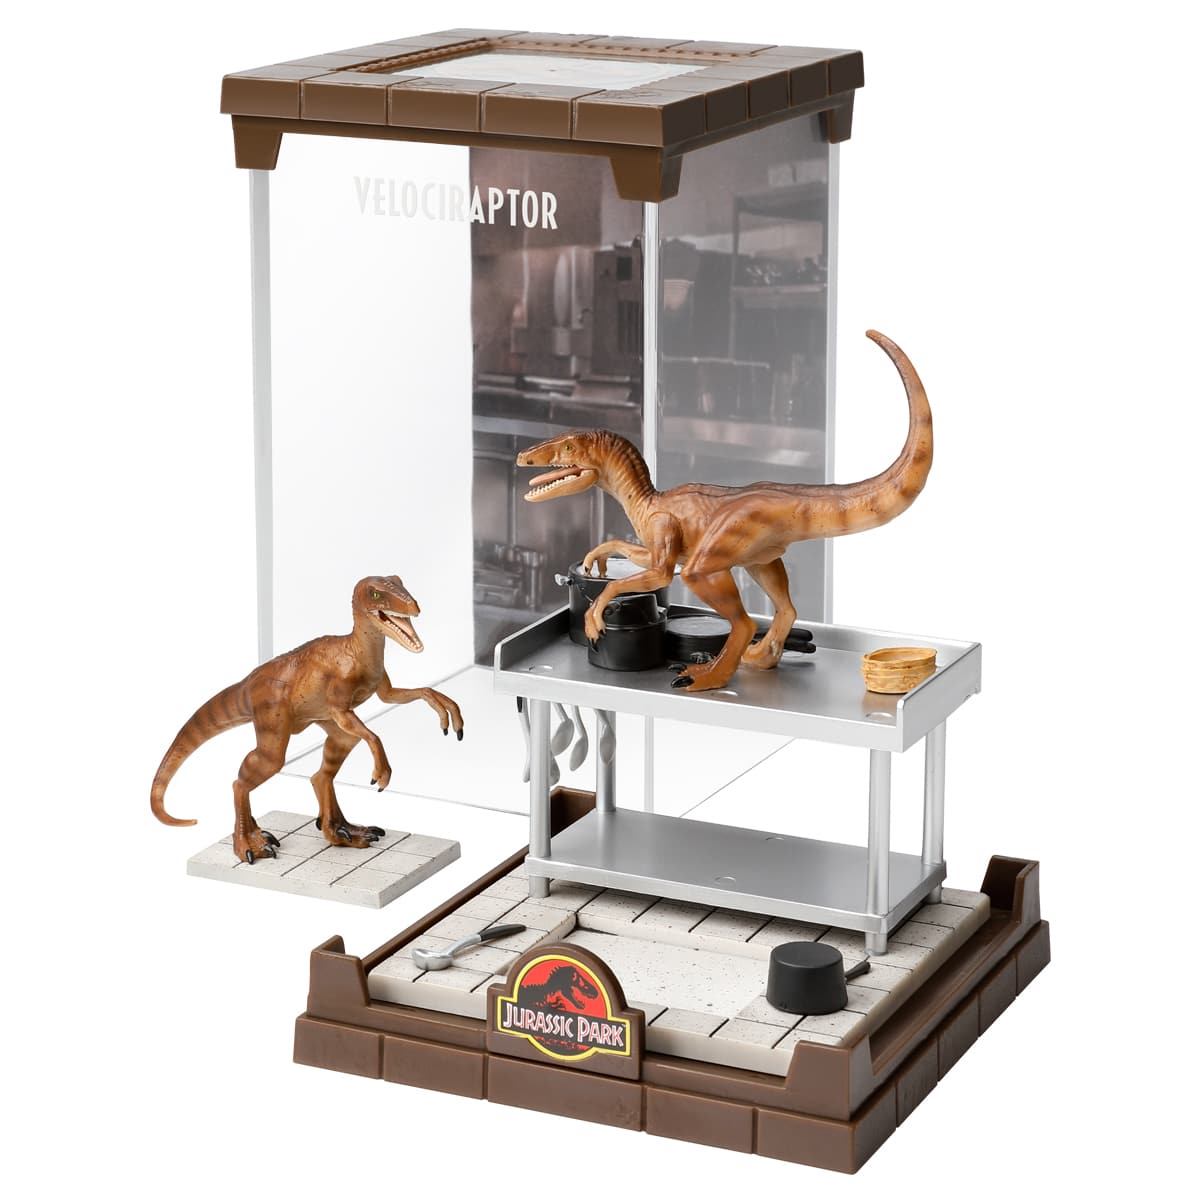 Velociraptor Diorama